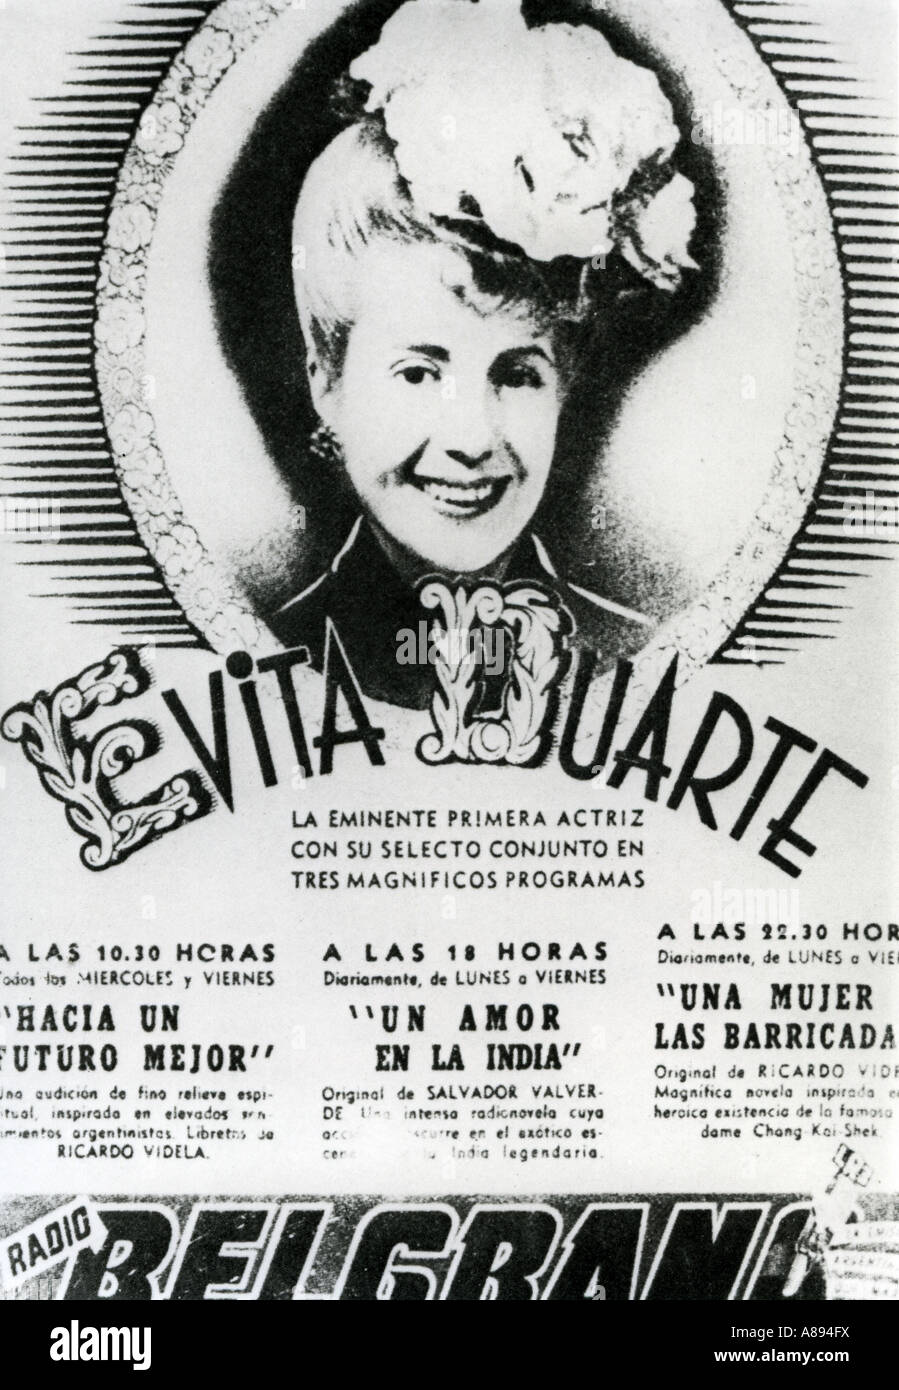 EVA PERON 1919 bis 1952 Frau des argentinischen Präsidenten Juan Perón, Evita Duarte - geboren siehe Beschreibung unten Stockfoto